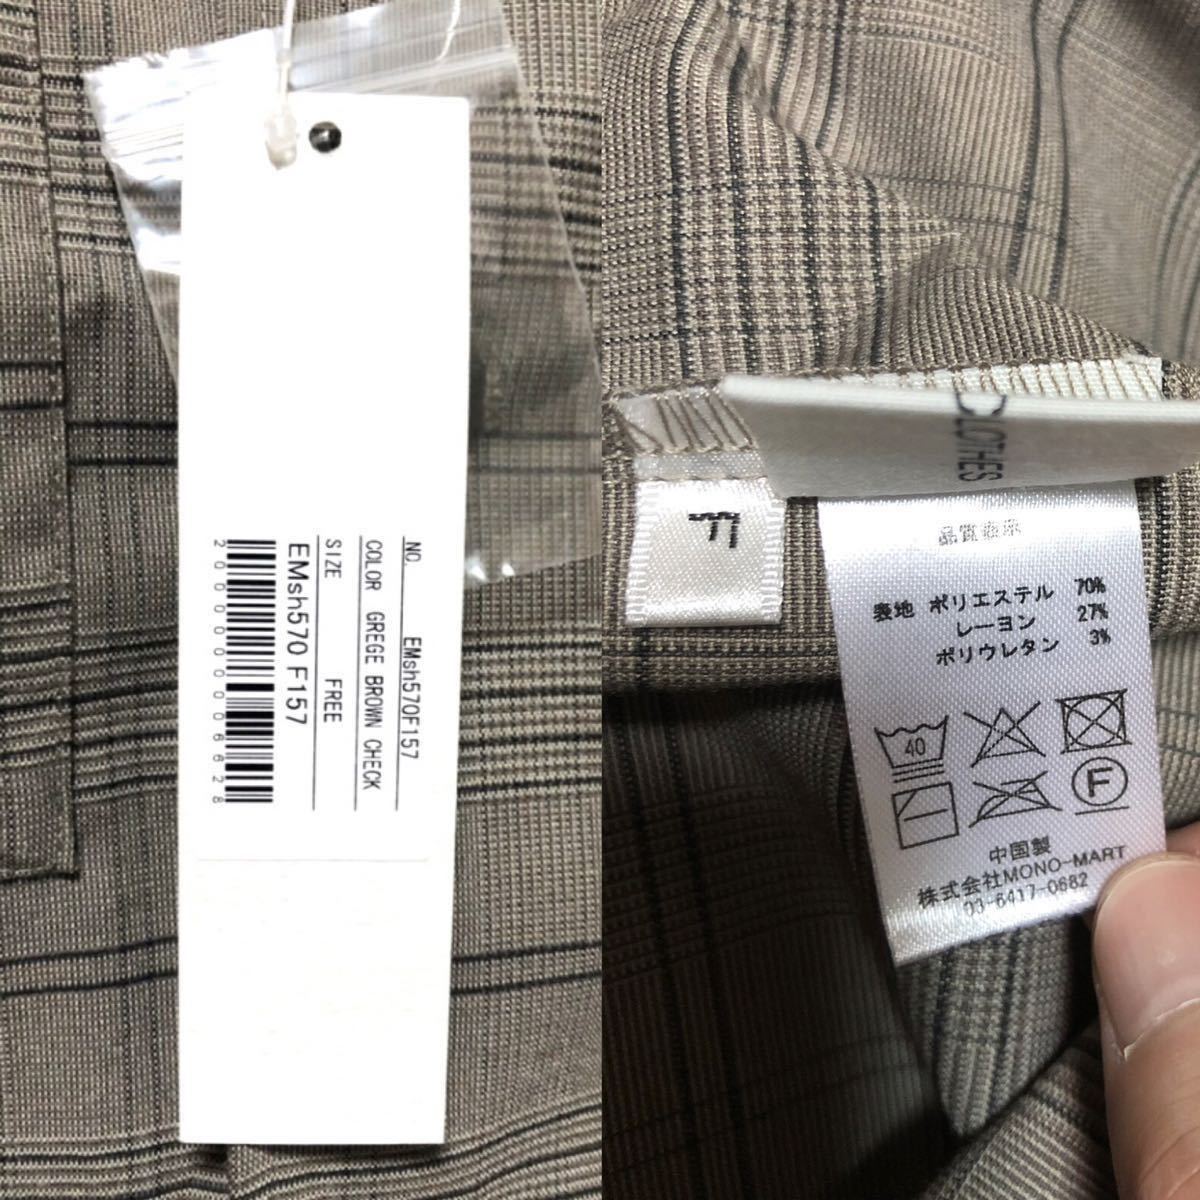  новый товар EMMA CLOTHES TR стрейч большой размер 5 минут рукав рубашка Brown проверка большой Silhouette бесплатная доставка 